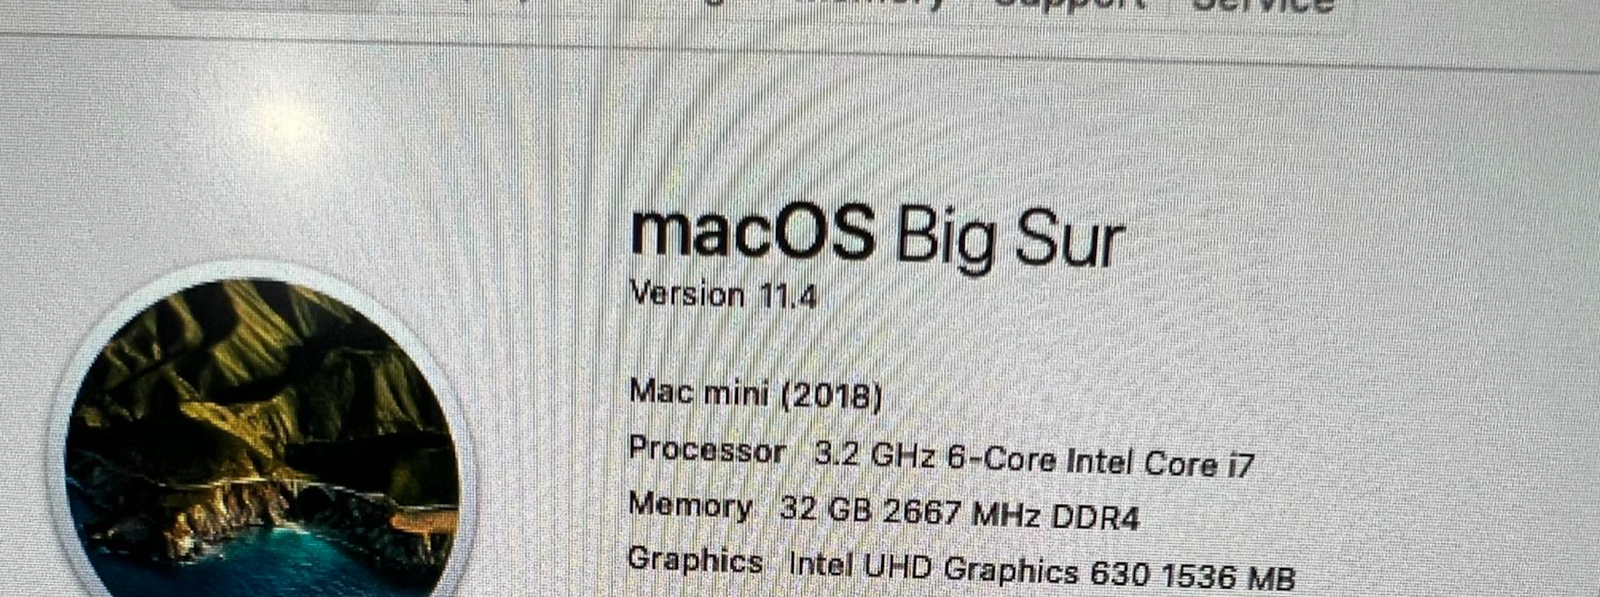 Mac Mini 2018 3.2GHz 6-Core i7 / 32GB RAM / 1TB SSD